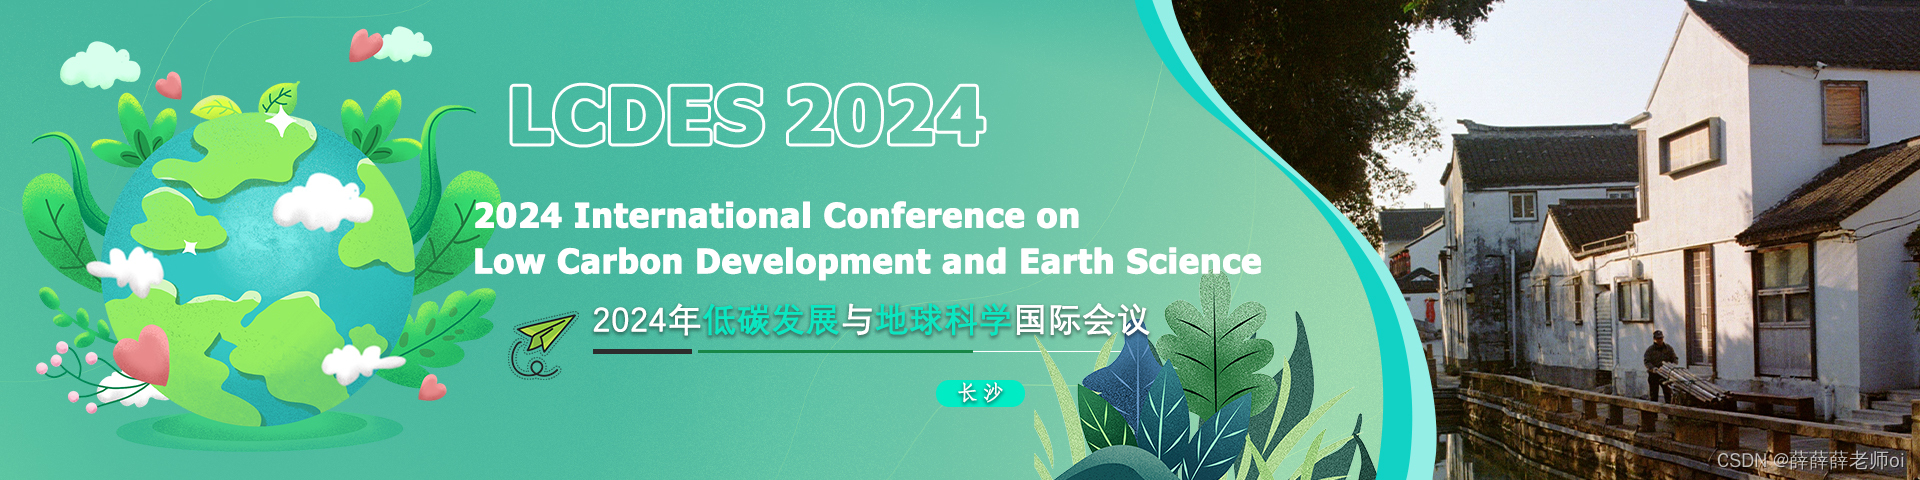 2024年低碳发展与地球科学国际会议 (LCDES 2024)